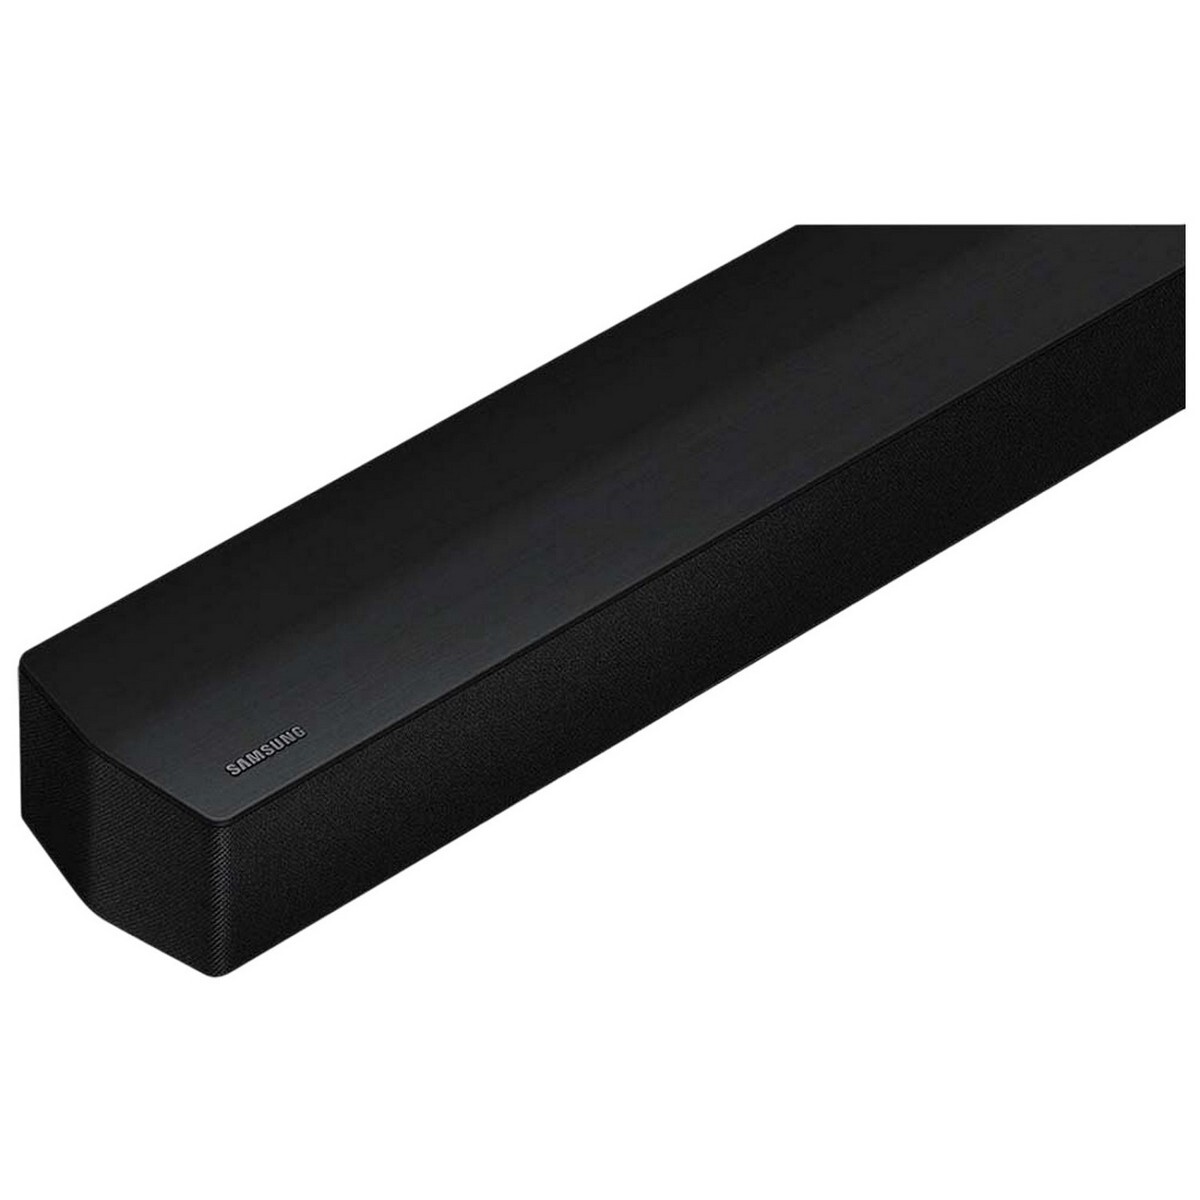 Samsung Sound Bar HW-B450/XL